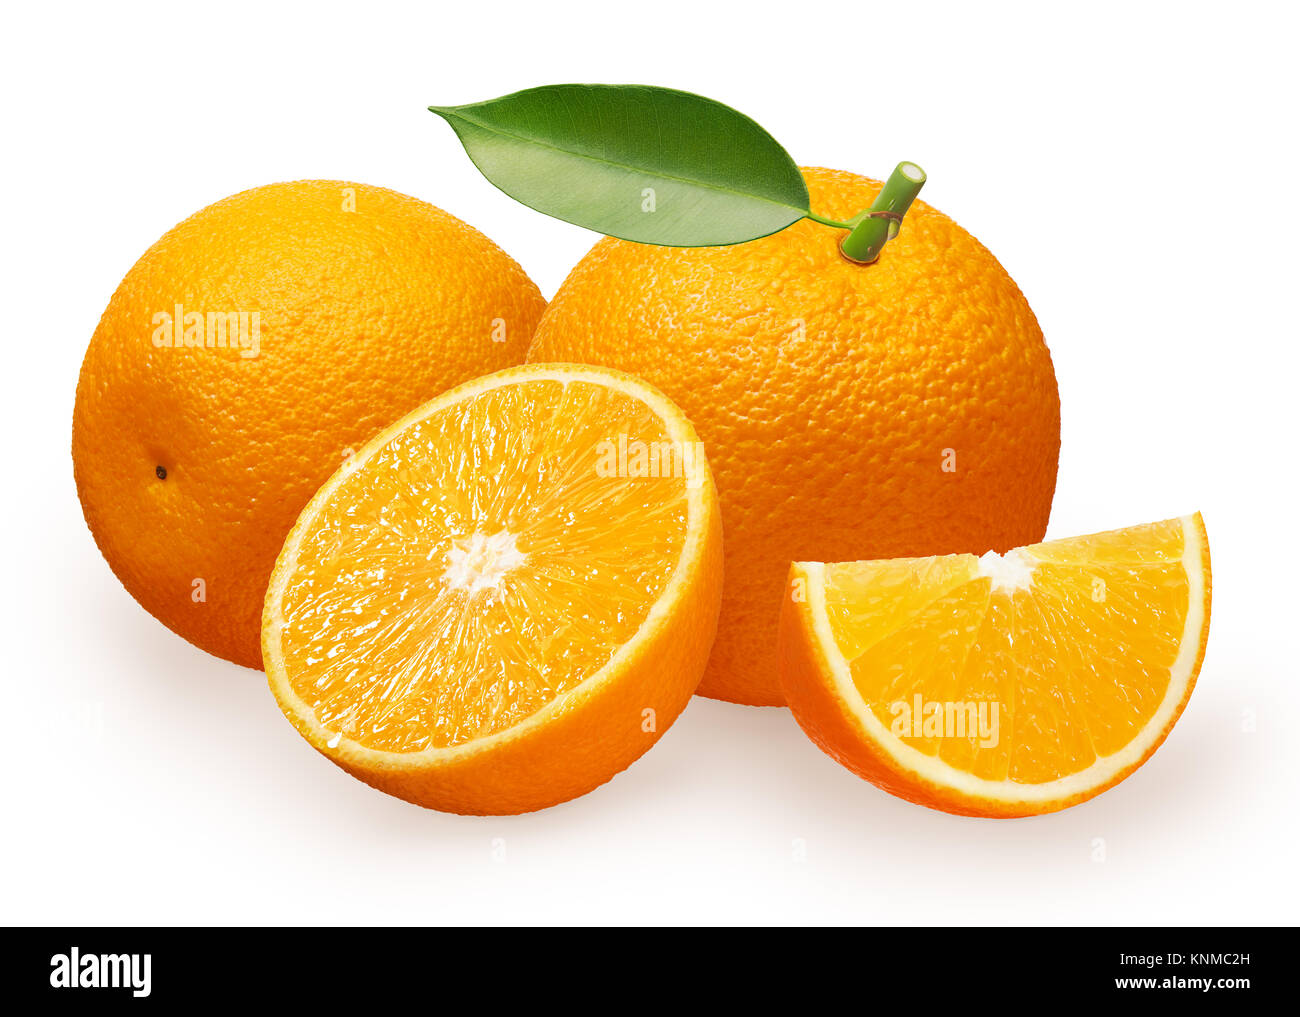 Fruits orange frais entier avec feuille verte à côté de l'orange couché sur le côté, la moitié et la tranche isolé sur fond blanc Banque D'Images